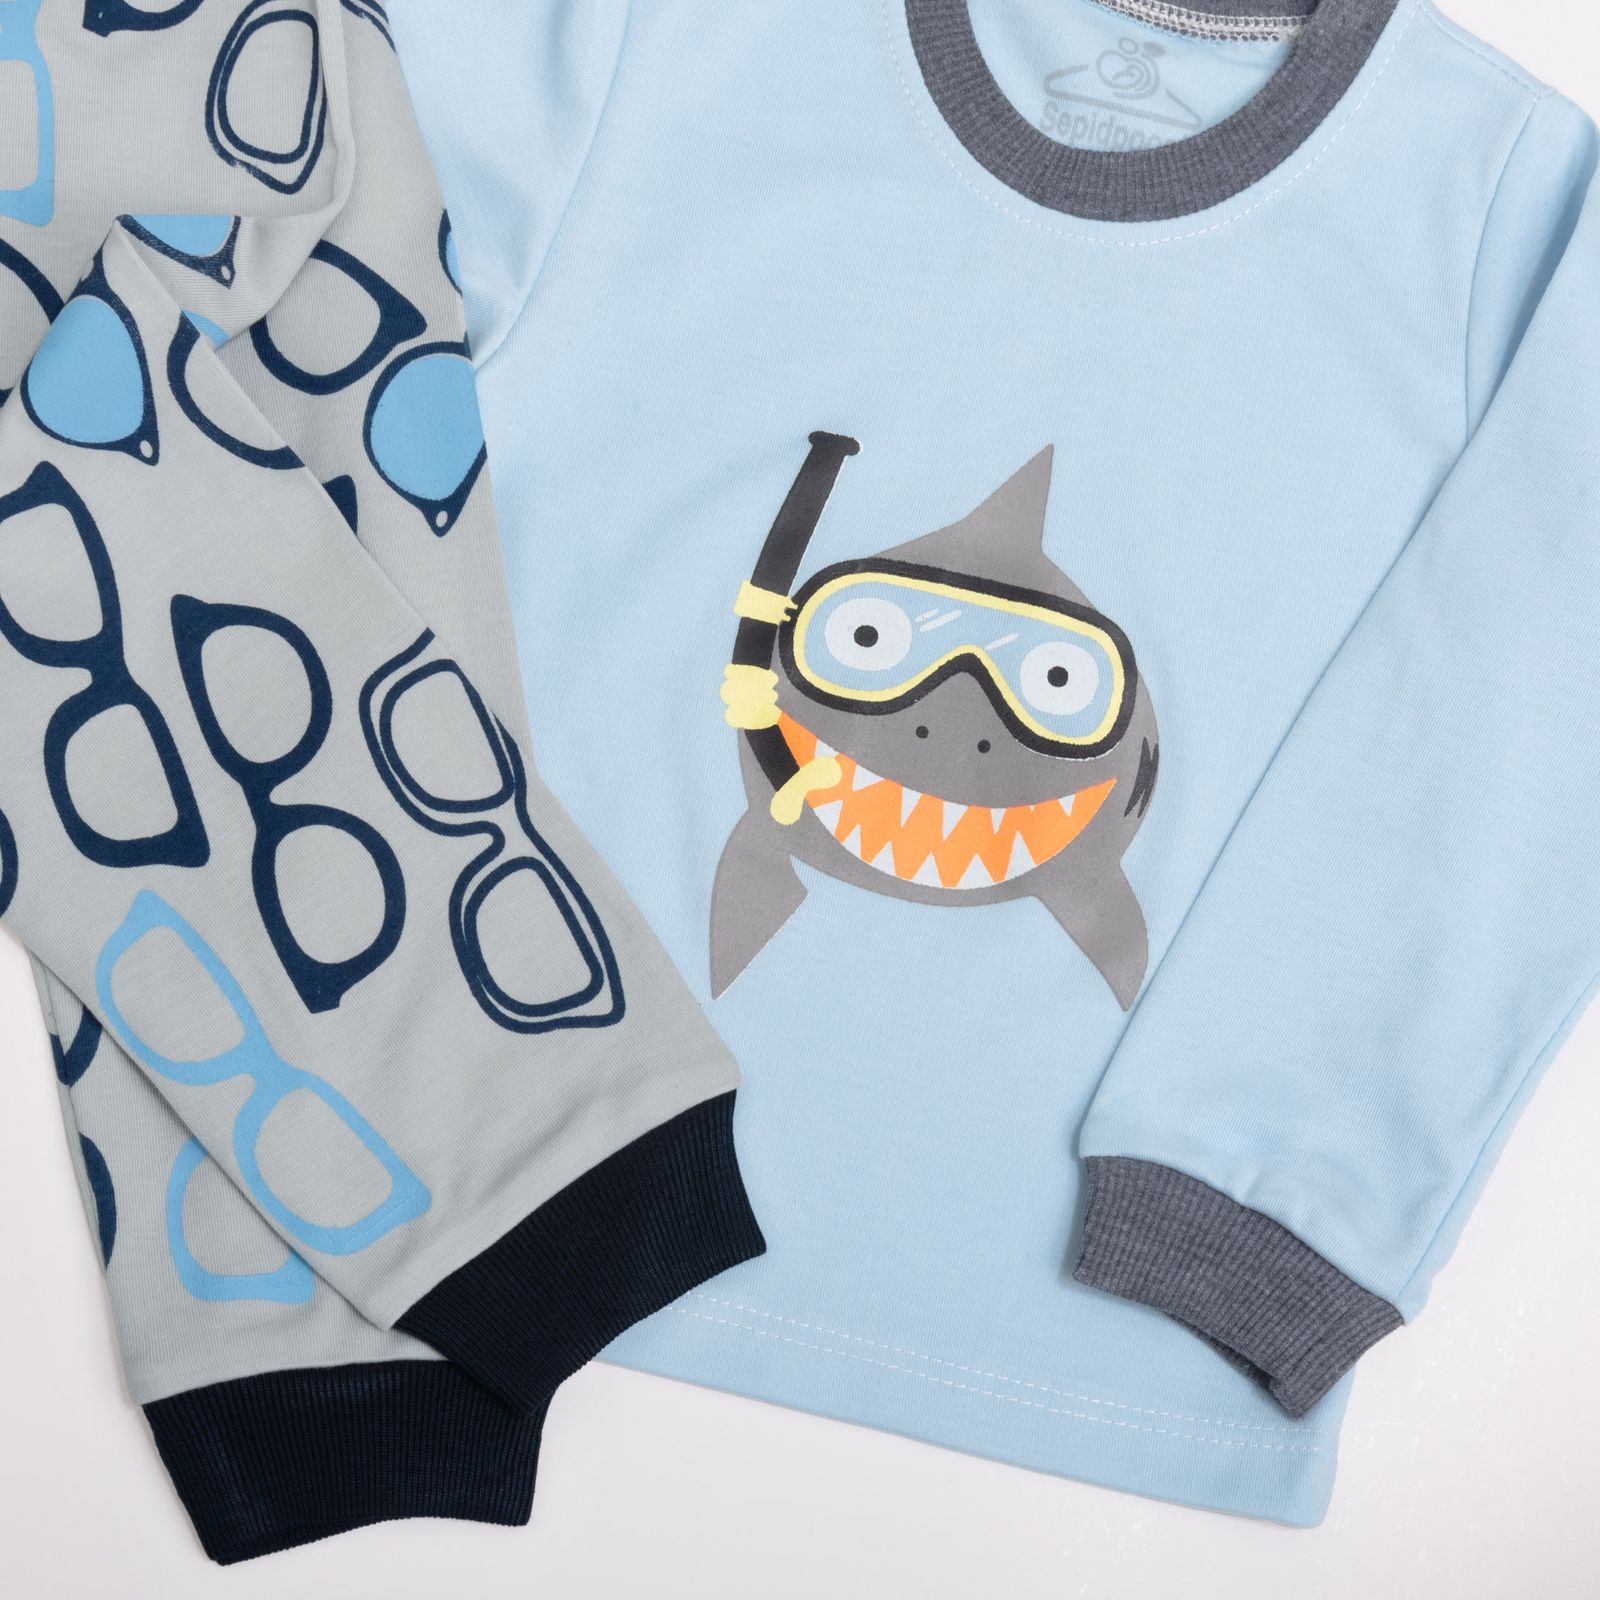 ست تی شرت آستین بلند و شلوار بچگانه سپیدپوش مدل Shark کد 1402521 -  - 4